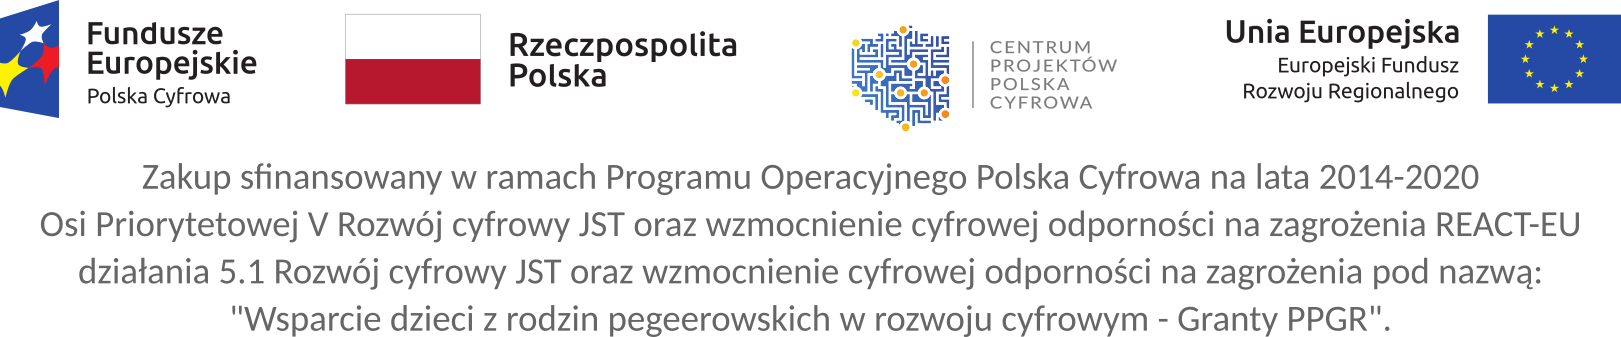 Baner promocyjny z grafikami: Fundusze Europejskie Polska Cyfrowa, Rzeczpospolita Polska, Centrum Projektów Polska Cyfrowa, Unia Europejska Europejski Fundusz Rozwoju Regionalnego